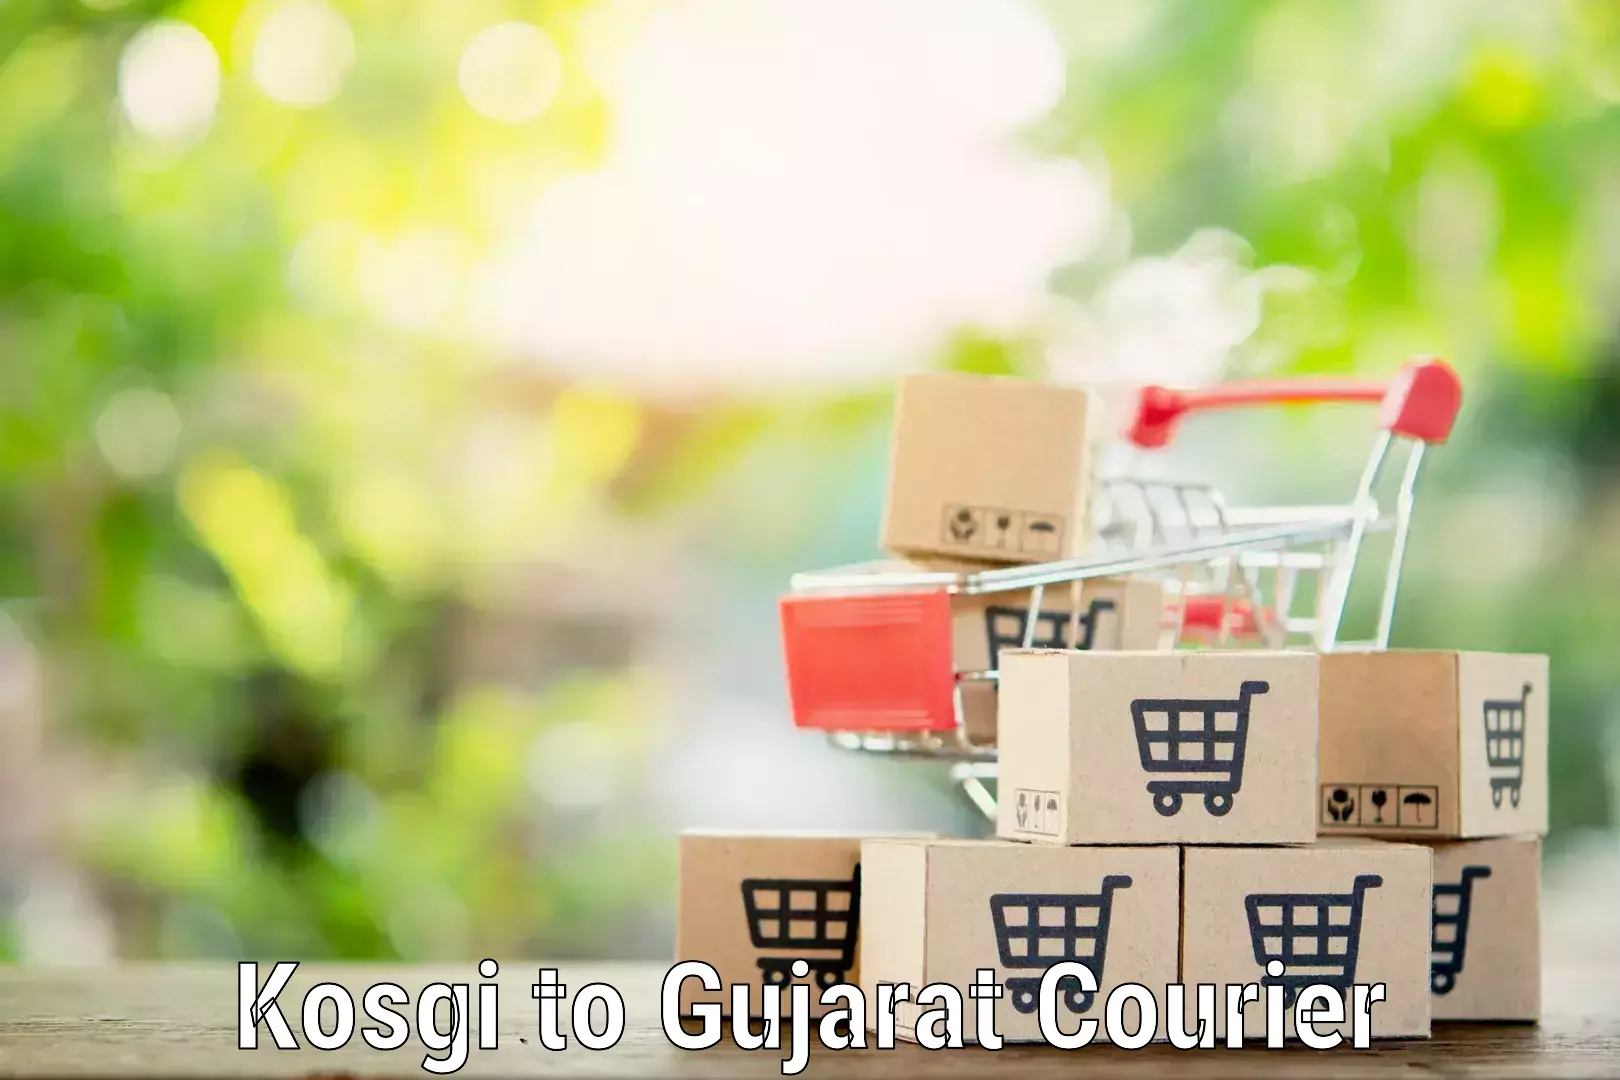 Household moving experts Kosgi to Gujarat